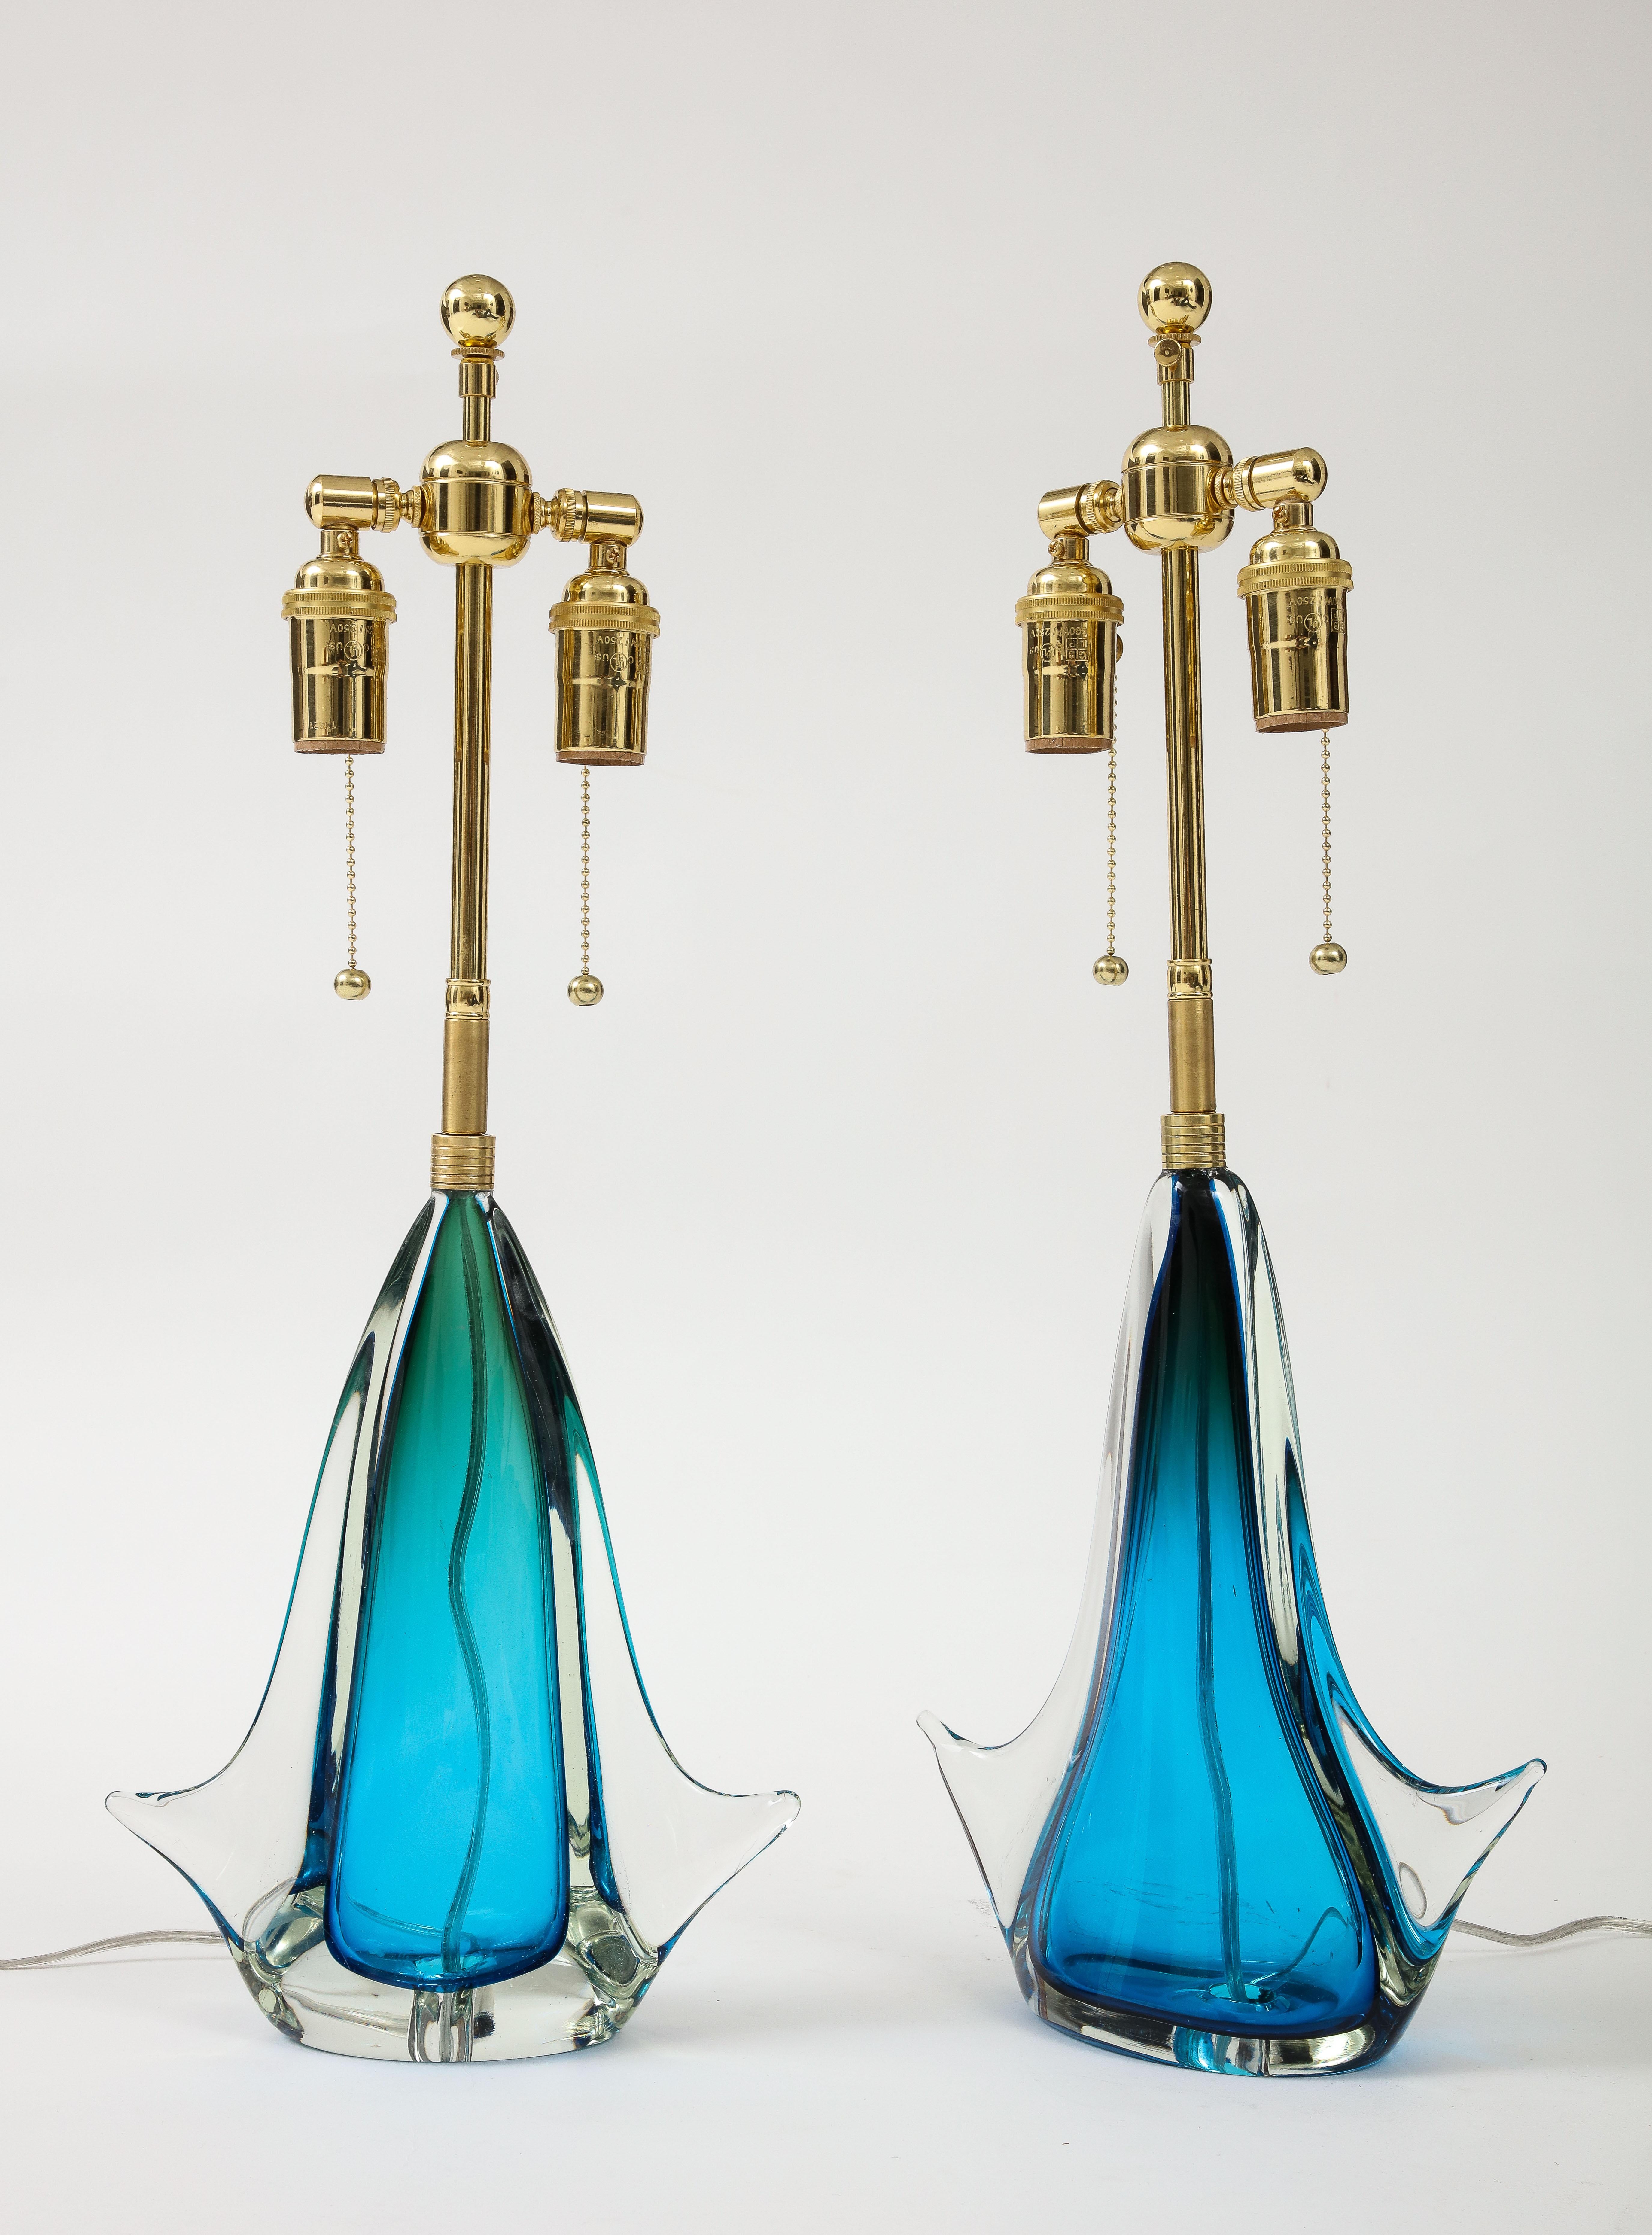 Paire de lampes en verre de Murano soufflé à la main, d'une couleur bleue étonnante.
Les lampes ont été nouvellement câblées avec des doubles grappes réglables en laiton poli qui acceptent des ampoules de taille standard.
Comme pour tout verre